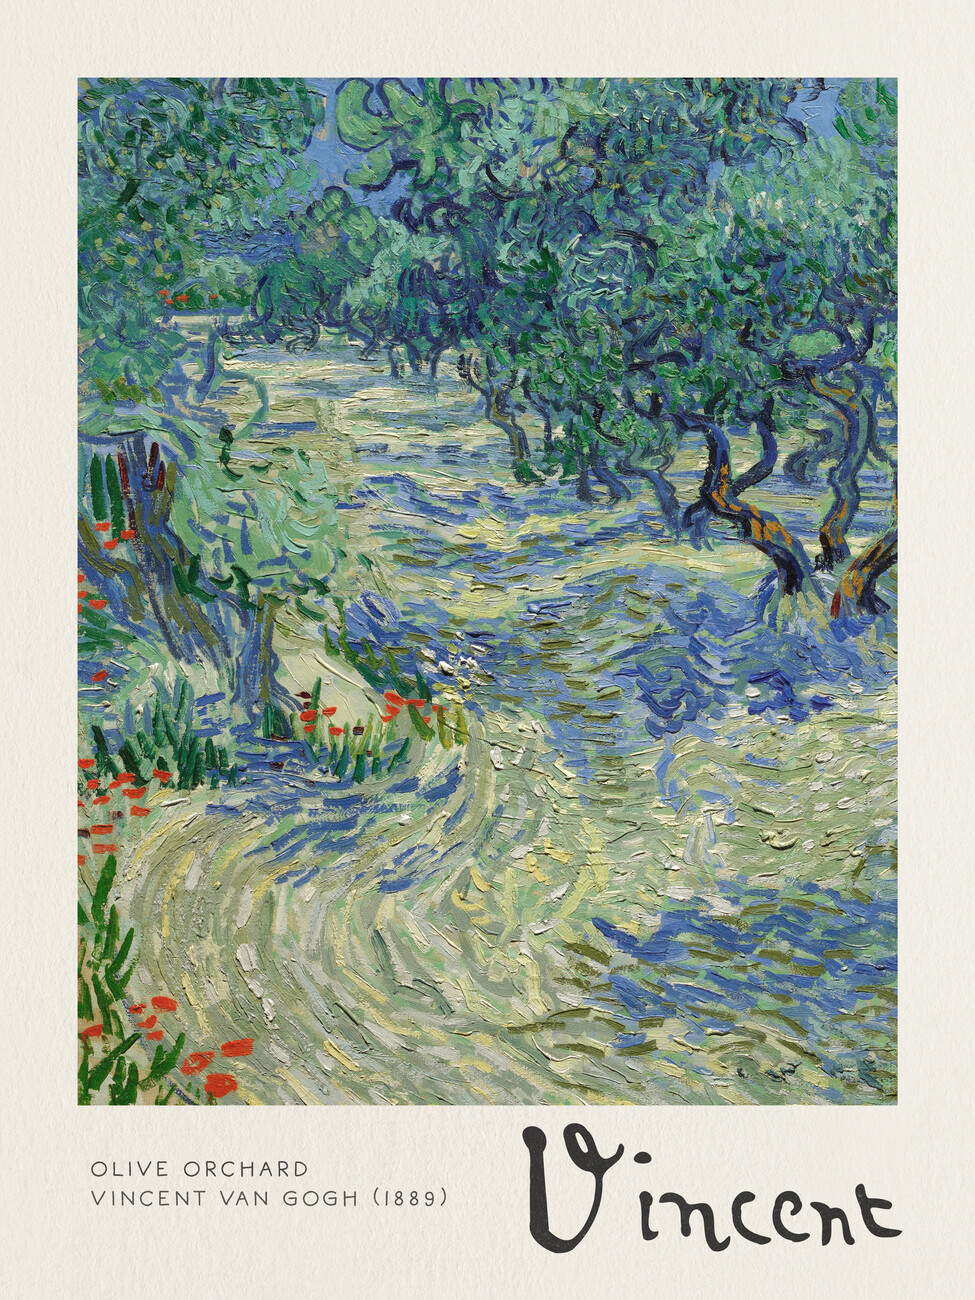 Taidejäljennös Olive Orchard - Vincent van Gogh